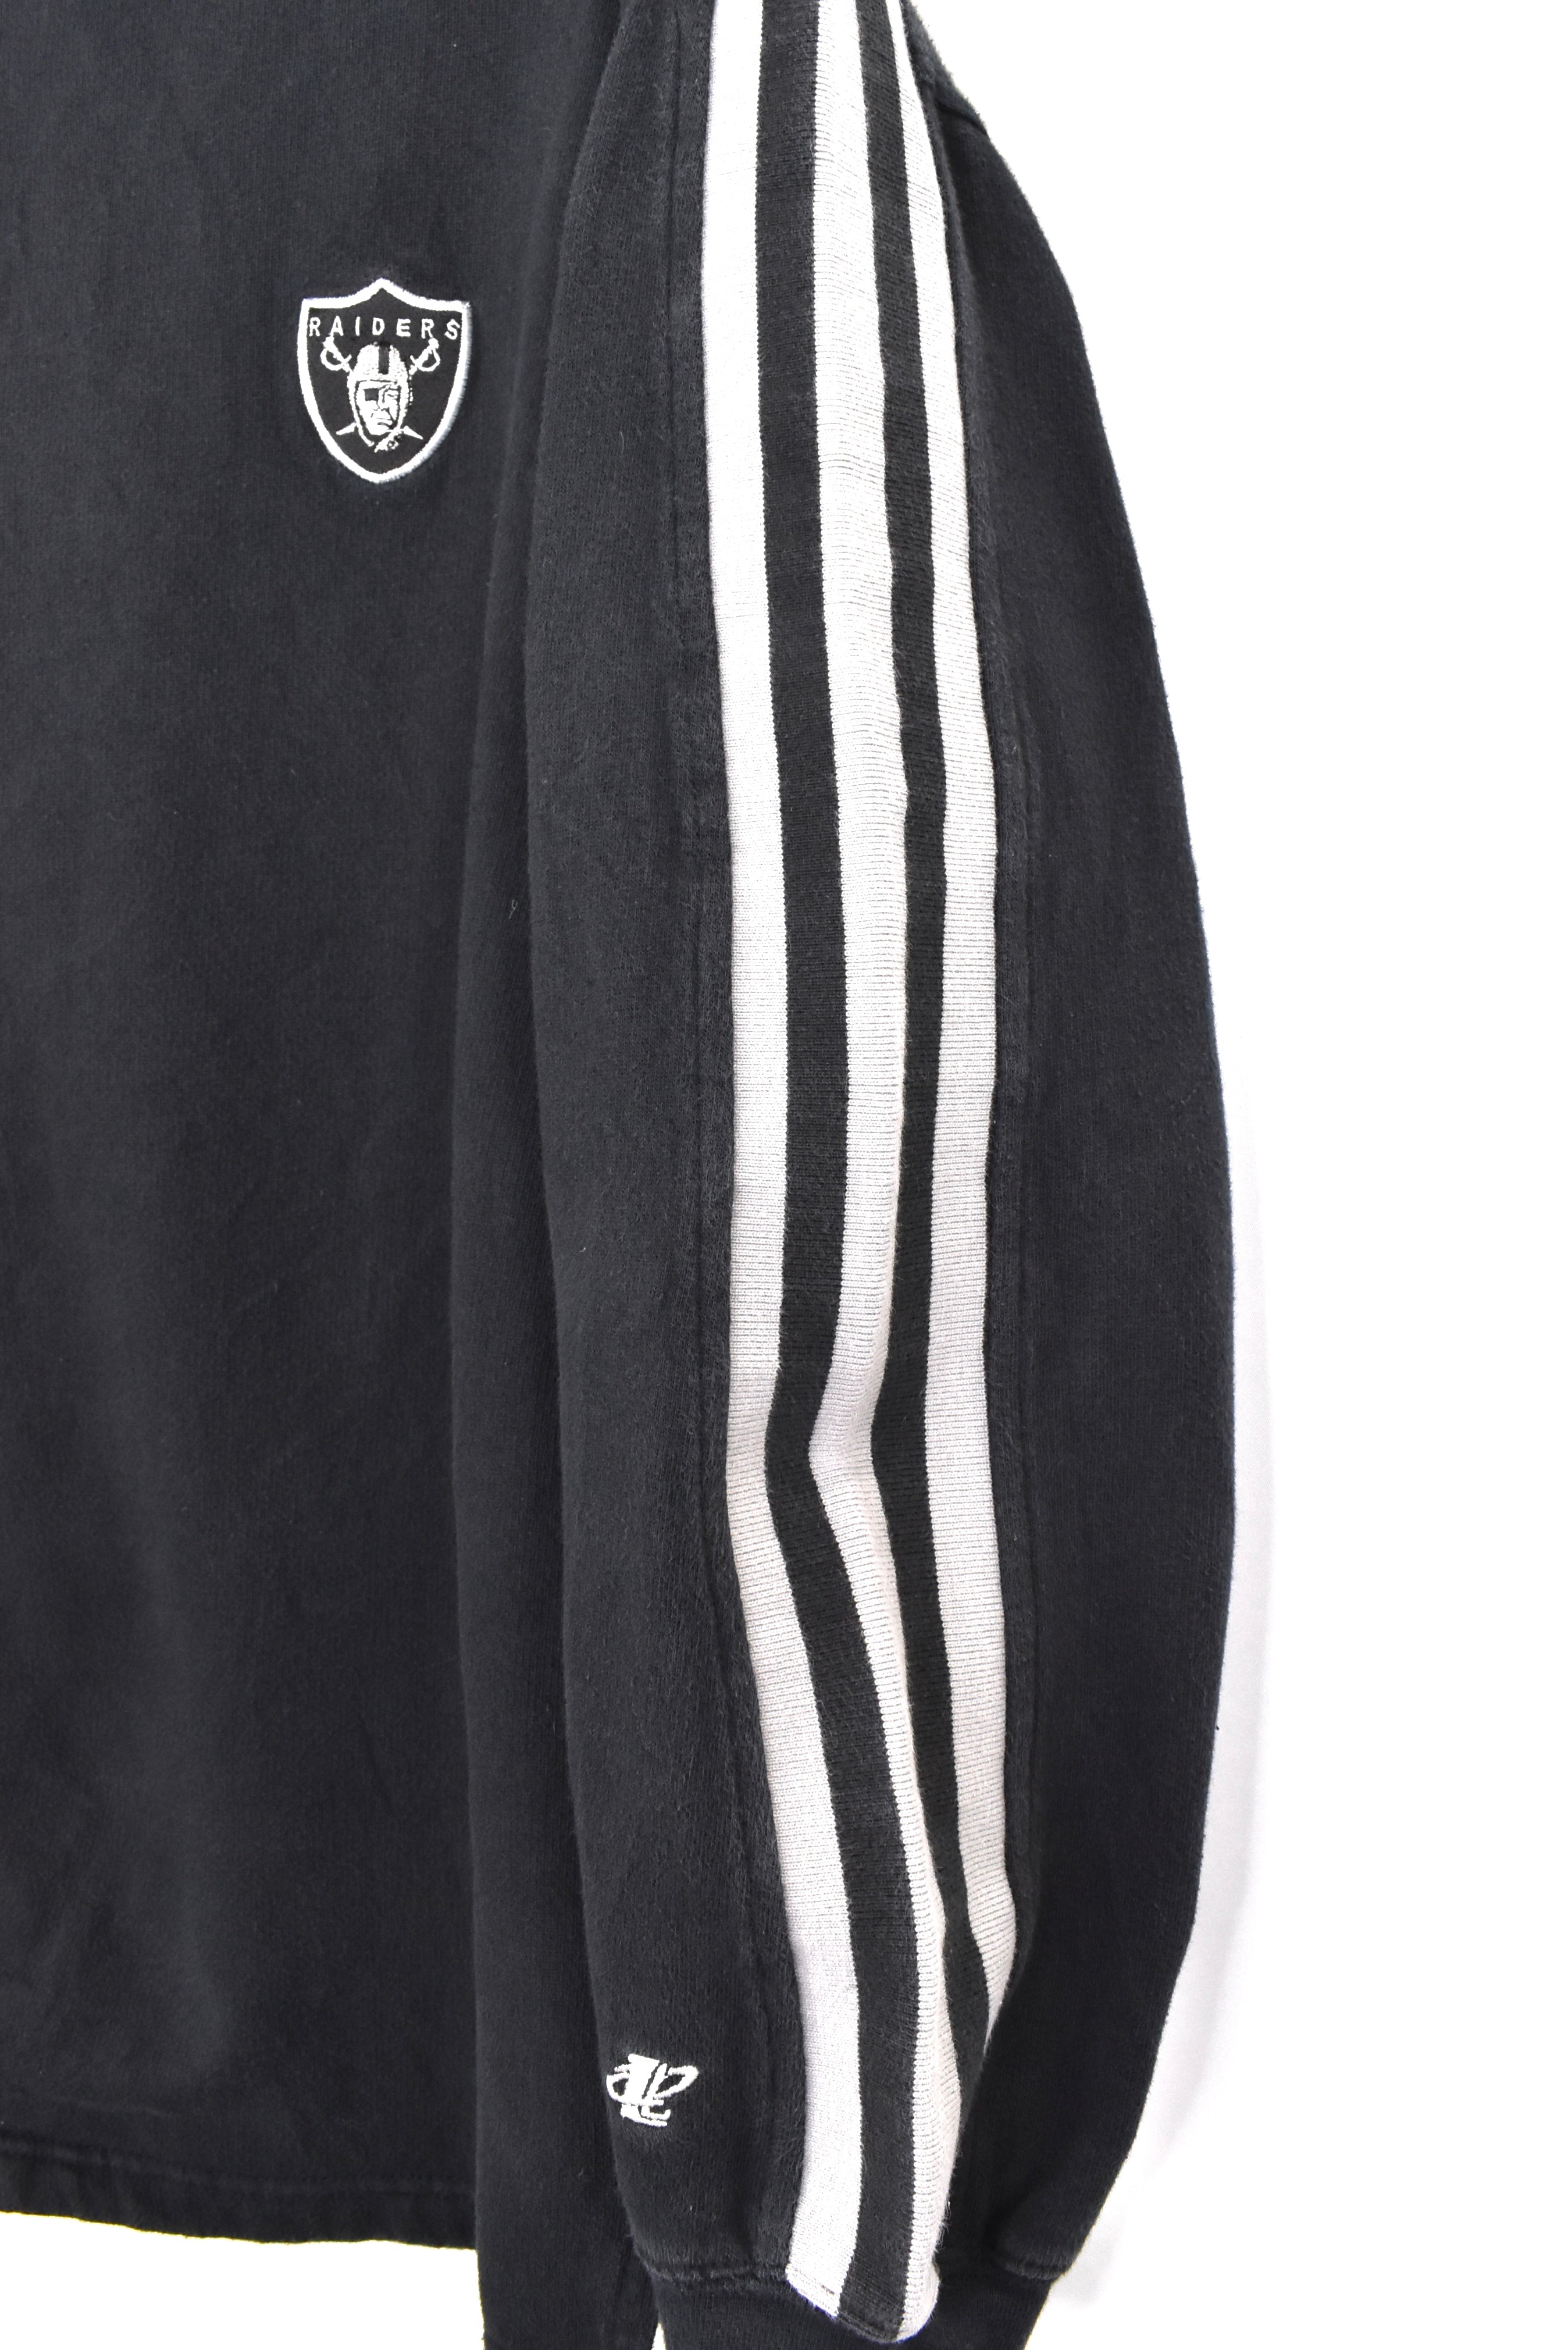 Vintage Oakland Raiders hoodie, NFL black embroidered sweatshirt - AU XL PRO SPORT